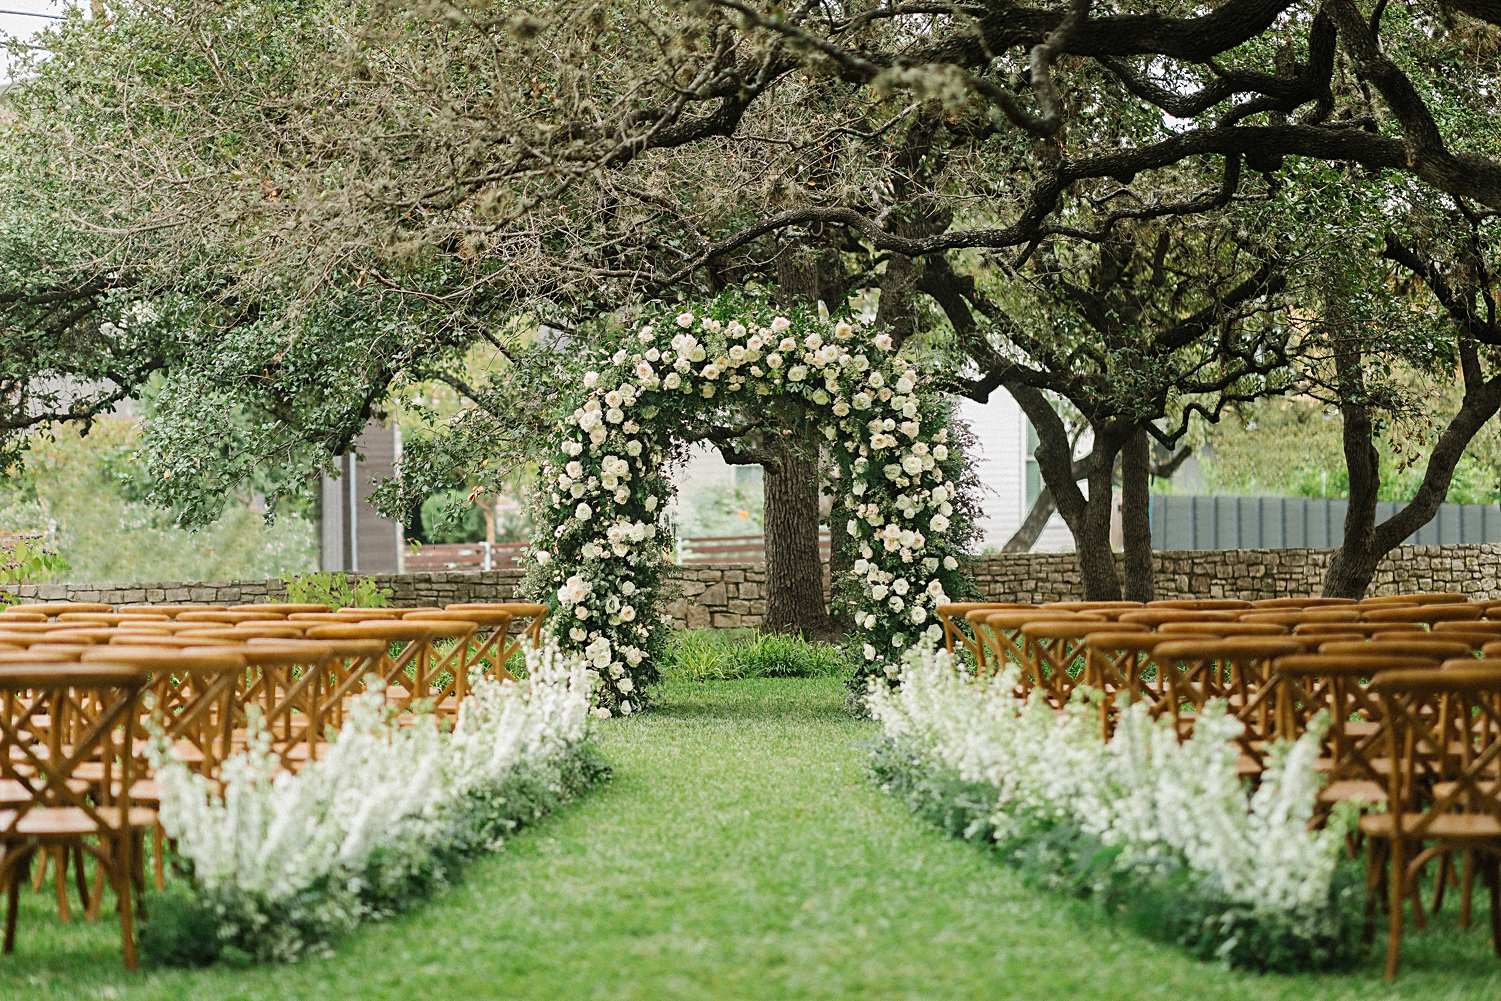 garden ceremony design altar Mattie's At Green Pastures Austin wedding Venue trees white flower arch brown chairs